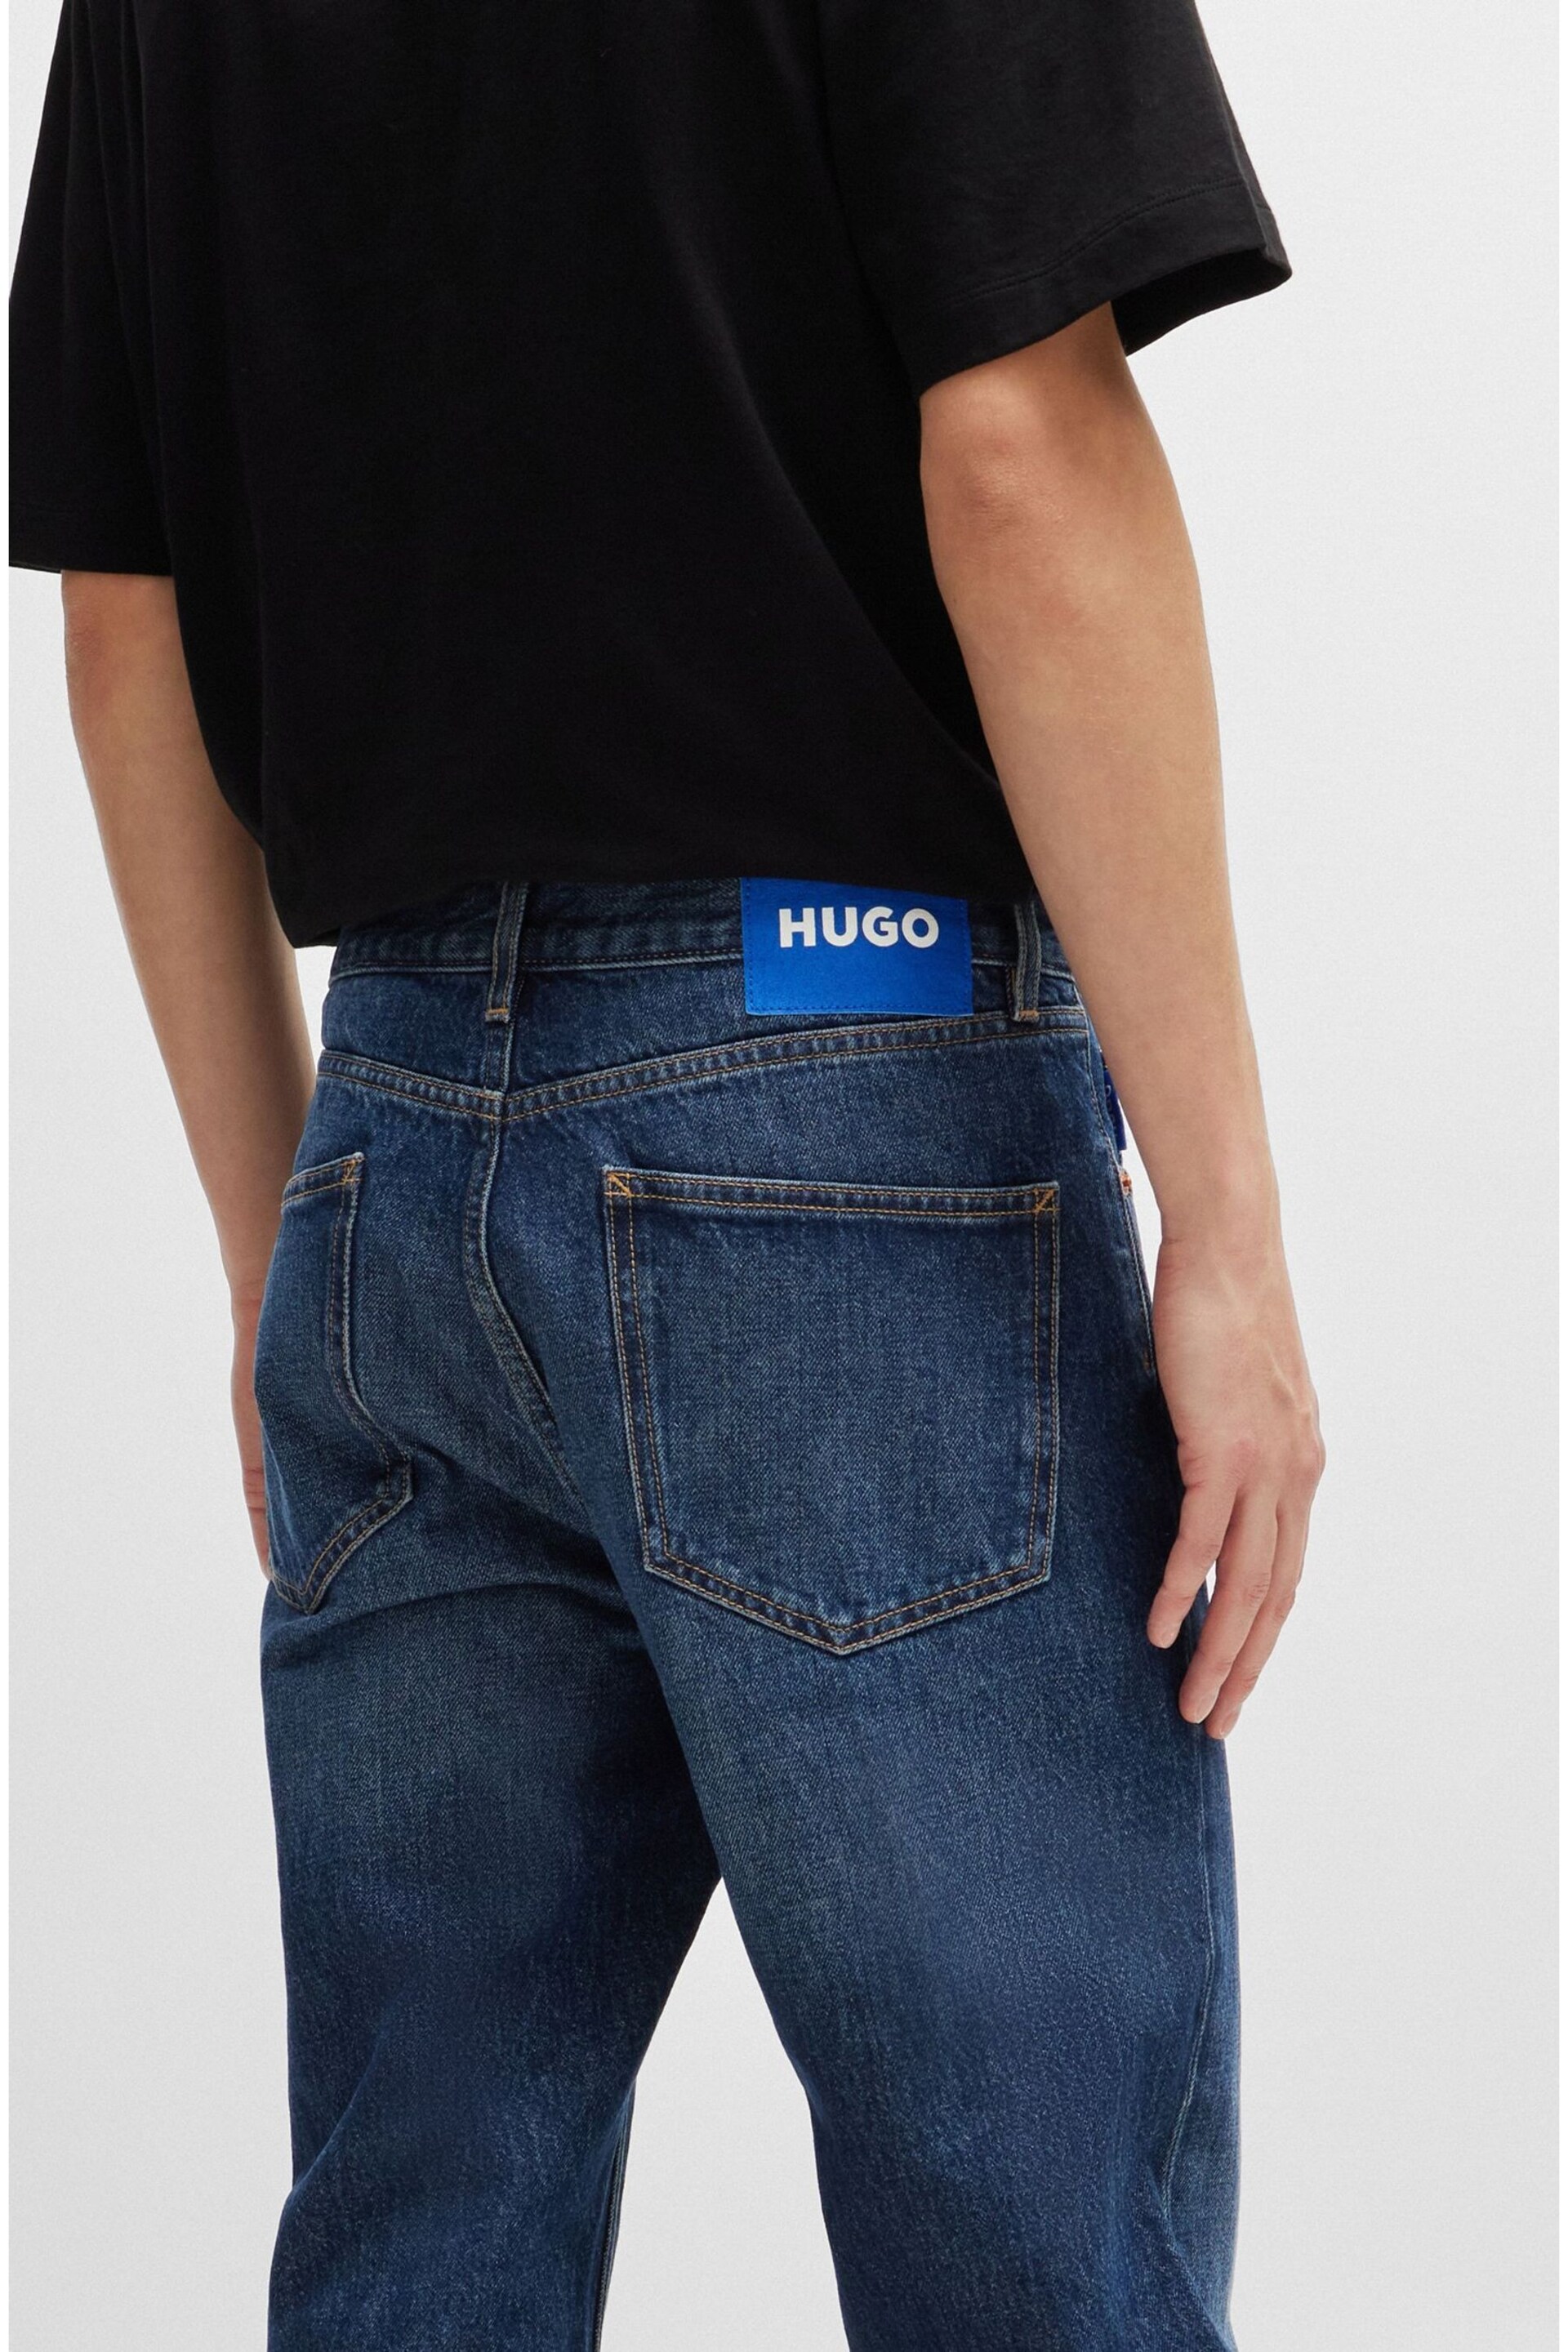 HUGO Blue Regular Fit Stonewash Denim Jeans - Image 4 of 4